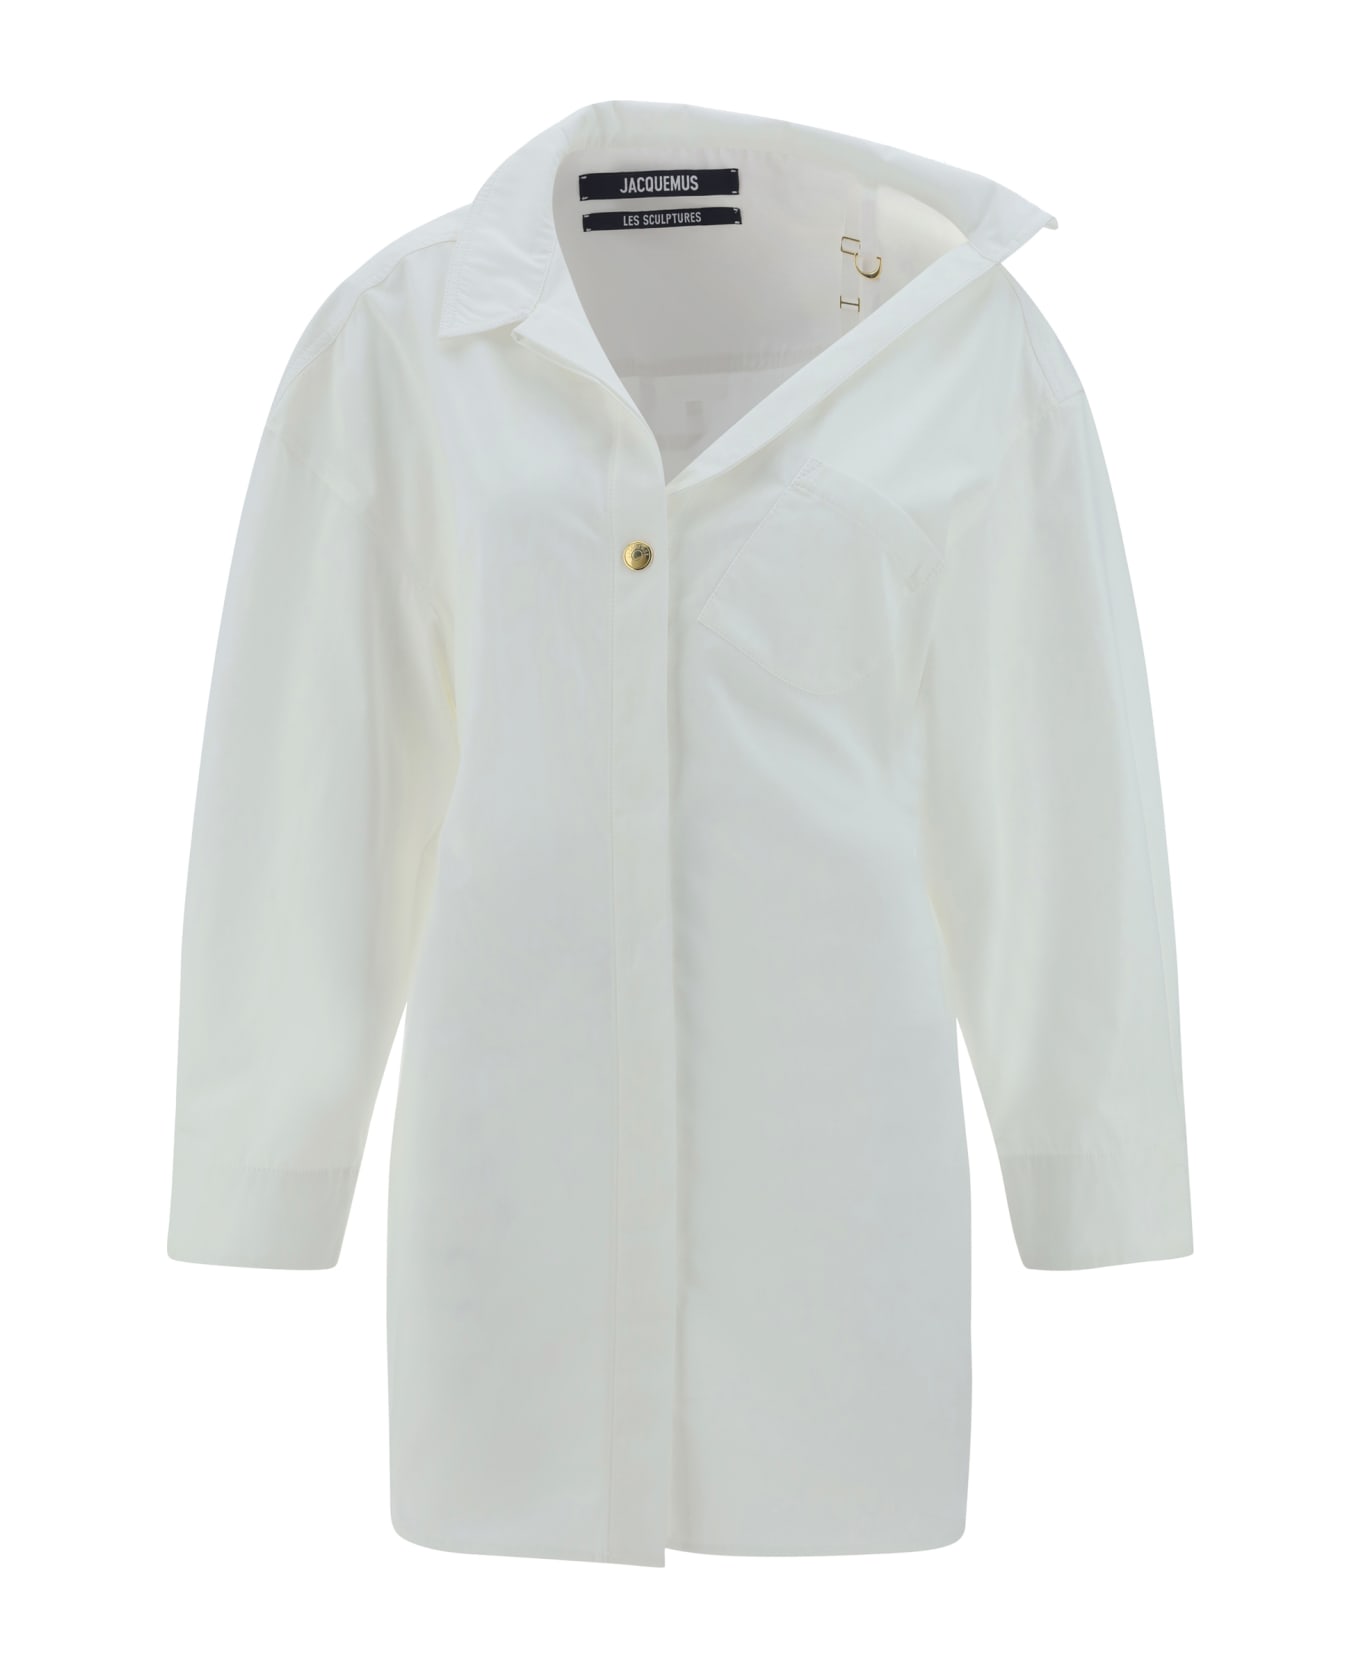 Jacquemus La Mini Robe Chemisier Dress - White レインコート